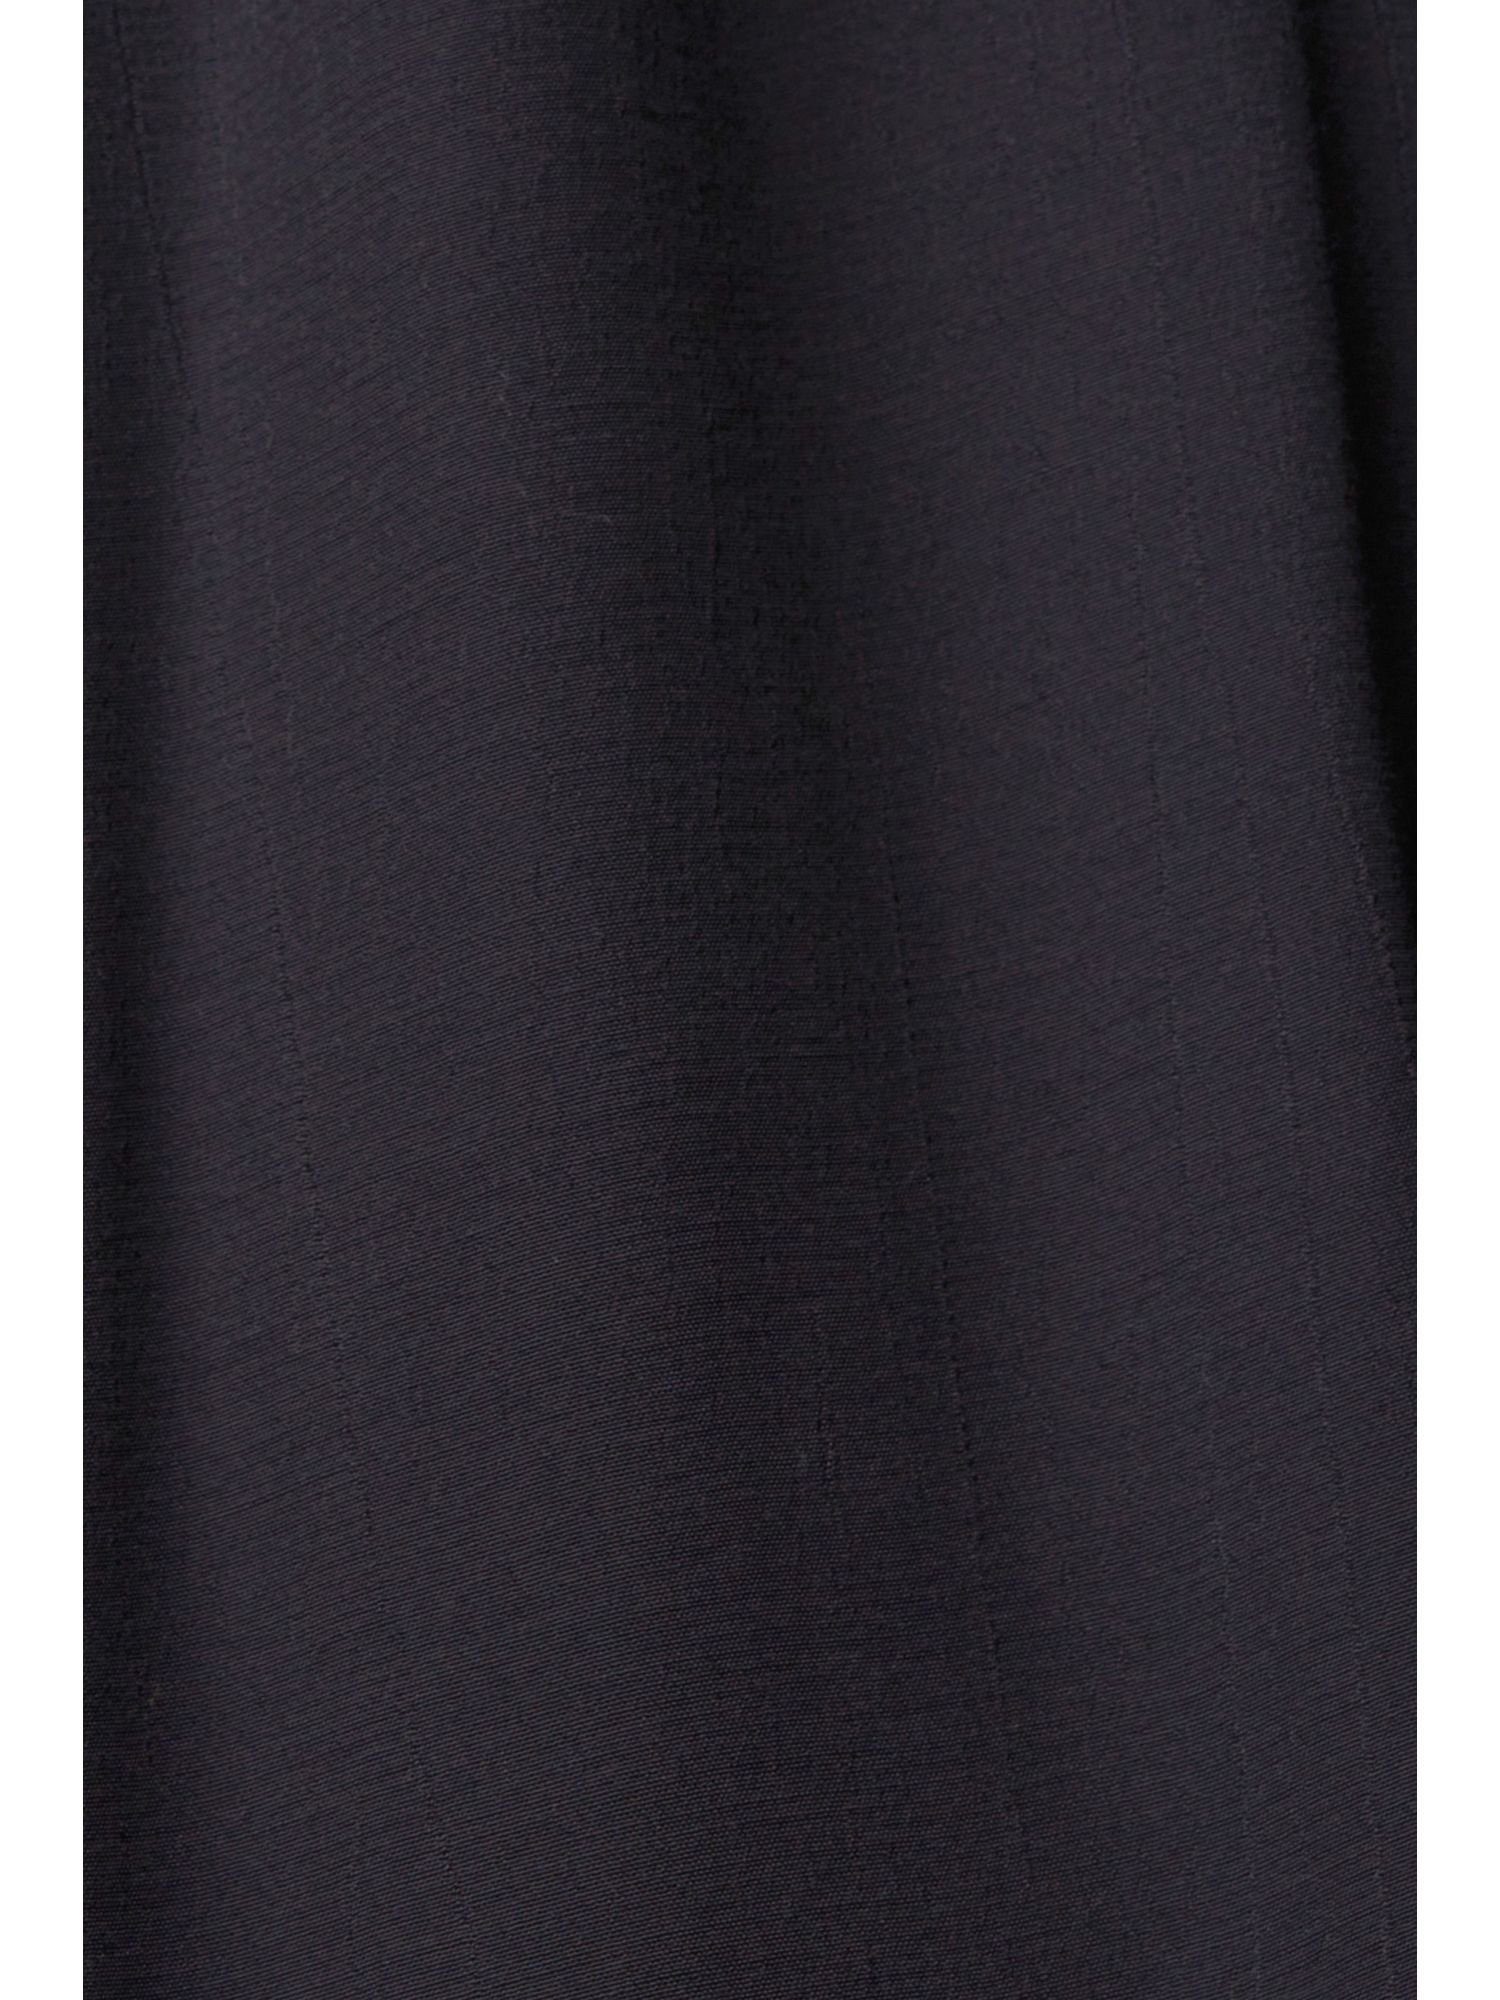 edc by Esprit Spitzendetails Minikleid mit BLACK Kleid